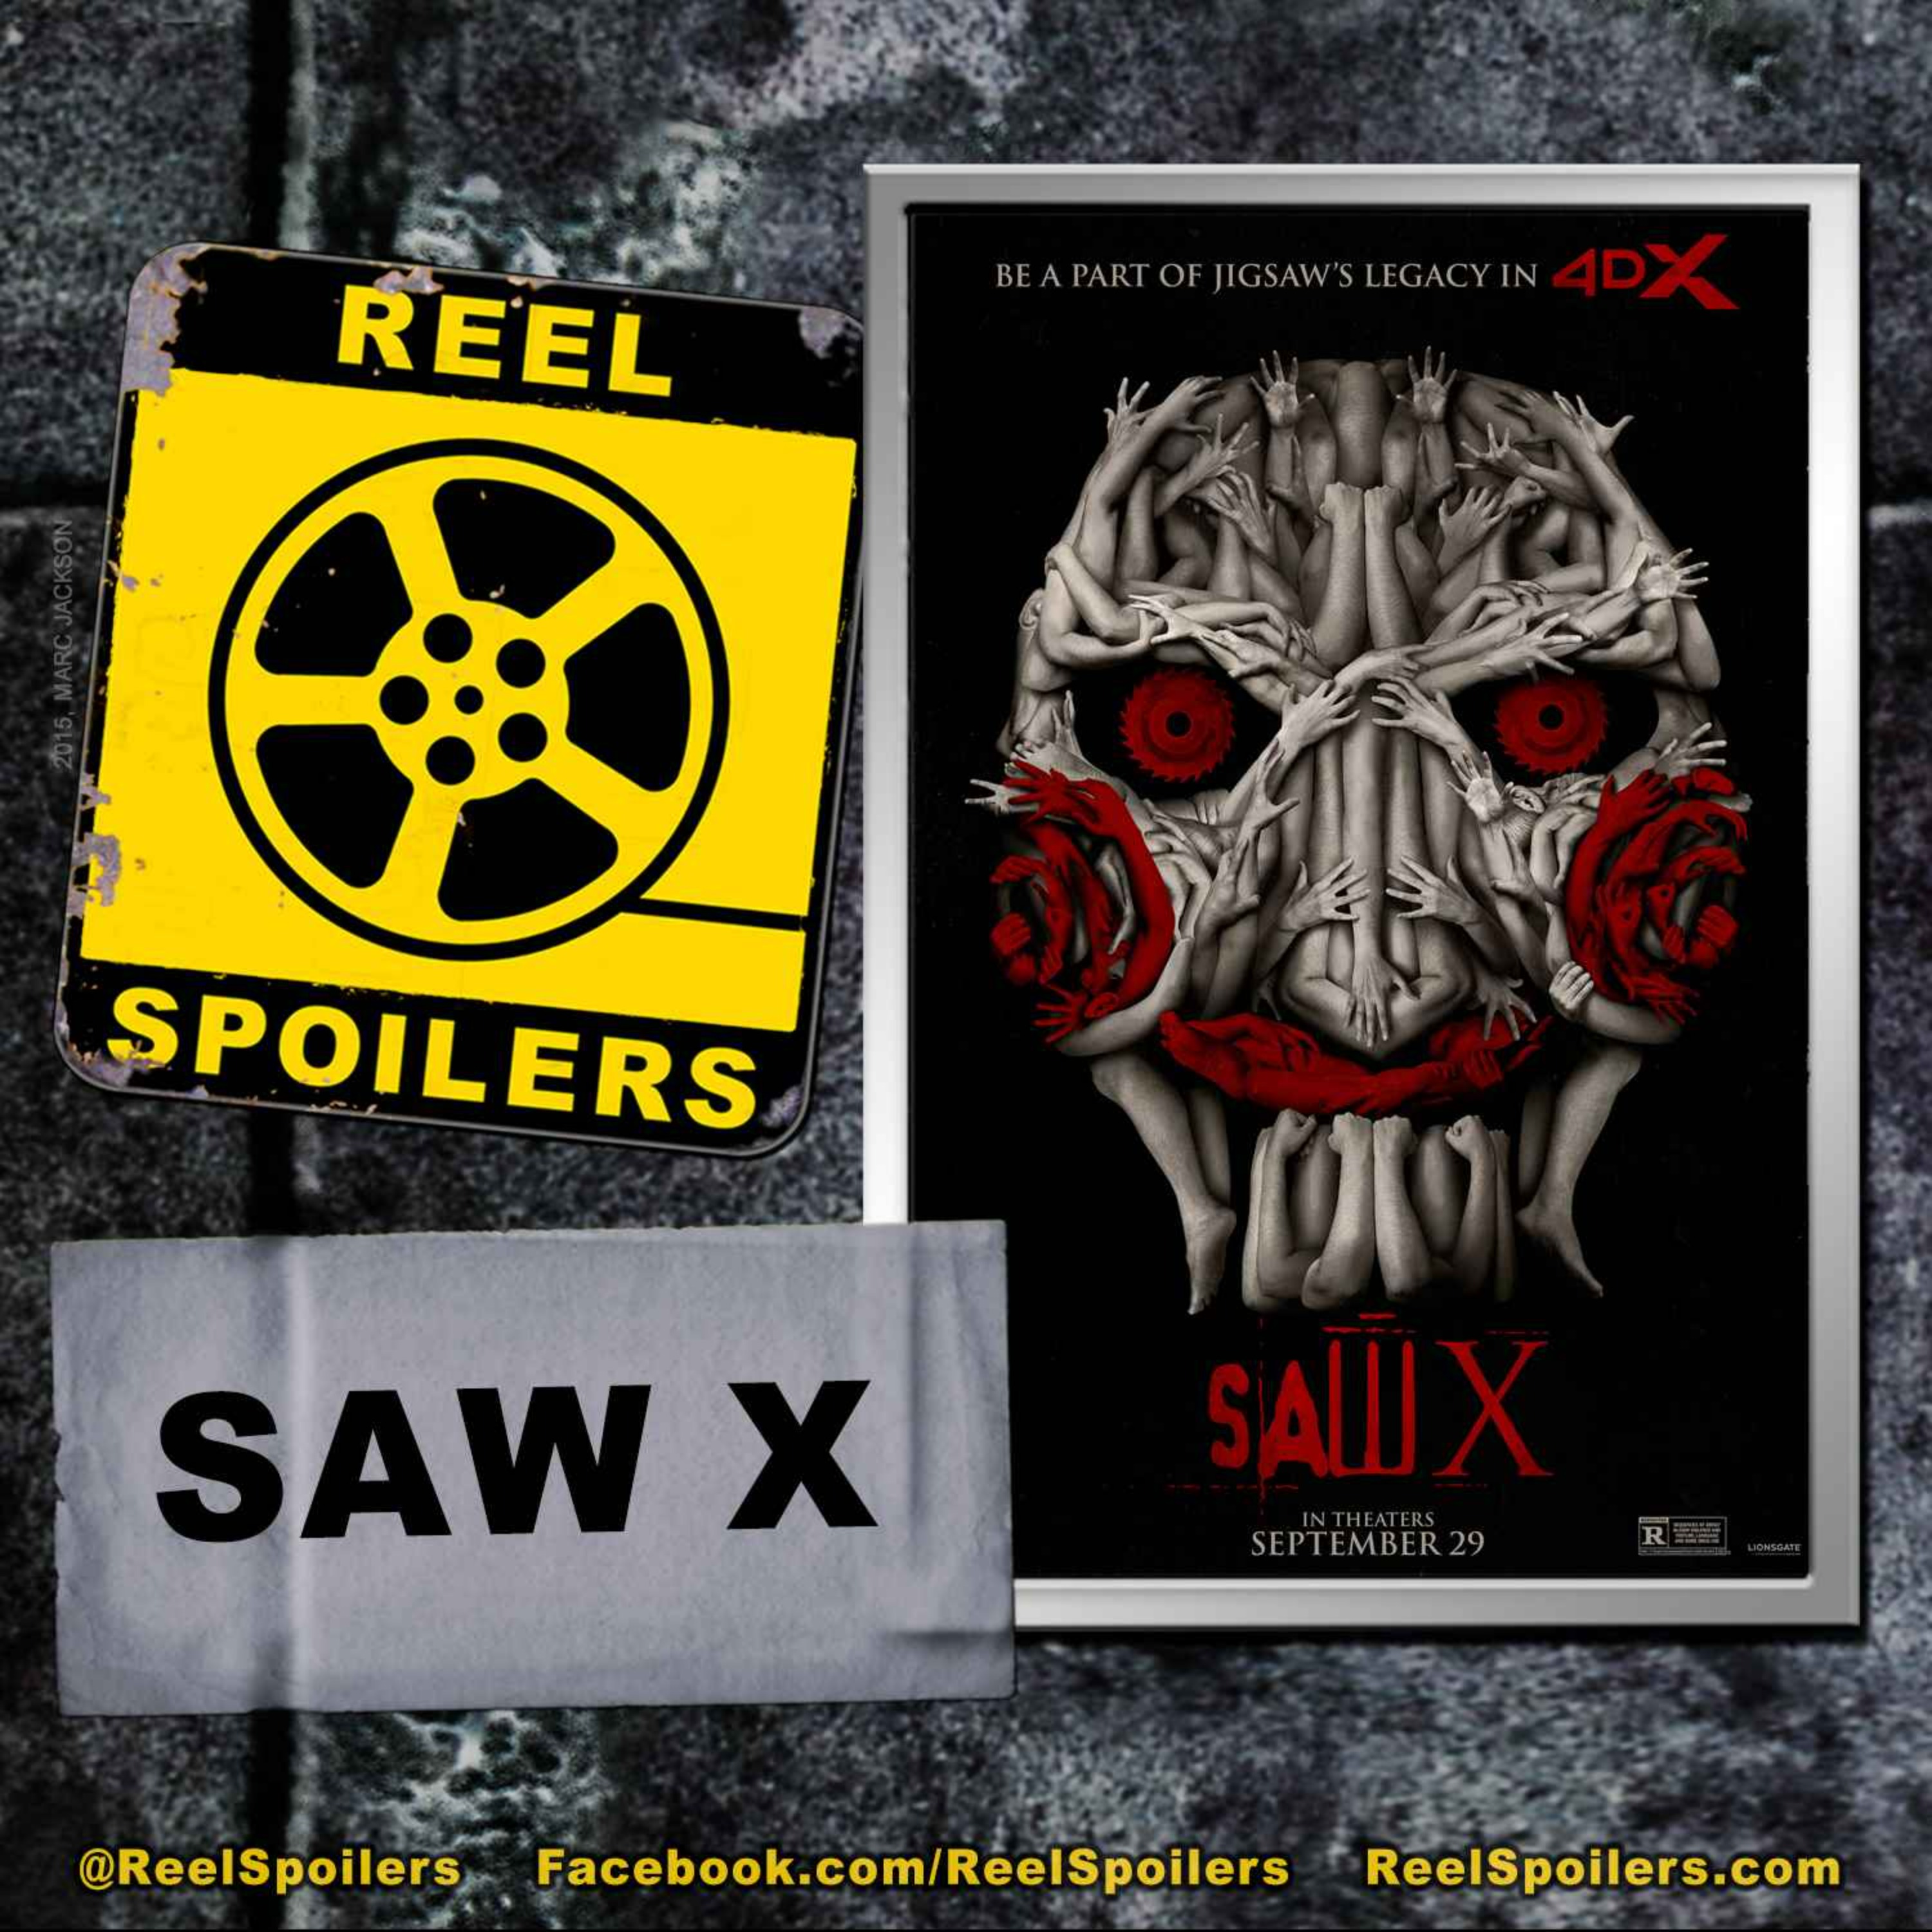 SAW X Starring Tobin Bell, Shawnee Smith, Synnøve Macody Lund